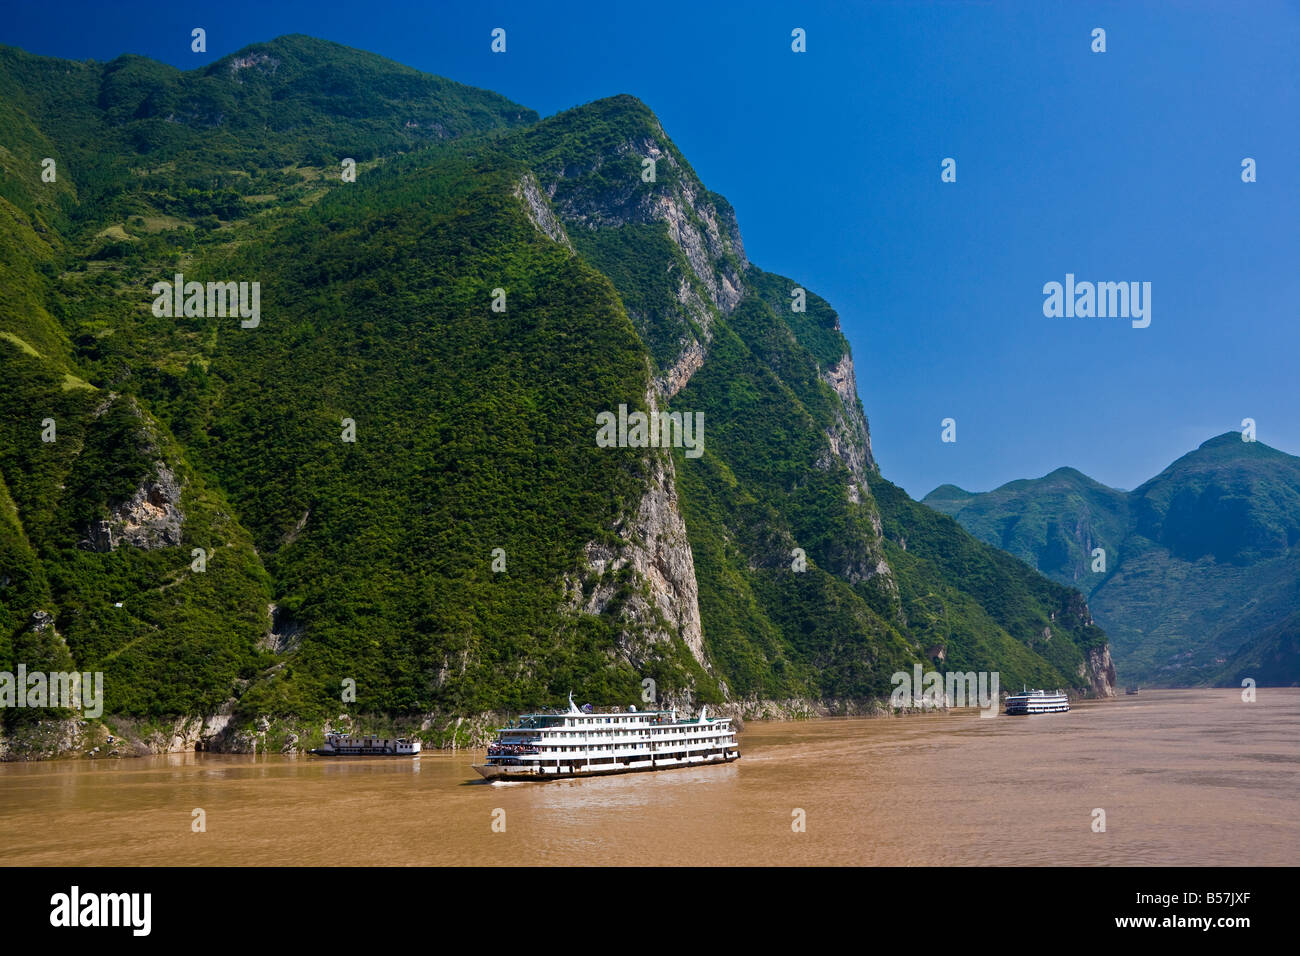 Hai tendere Guang Guang barca passando attraverso la gola di Wu in tre gole area del fiume Yangzi Cina JMH3410 Foto Stock